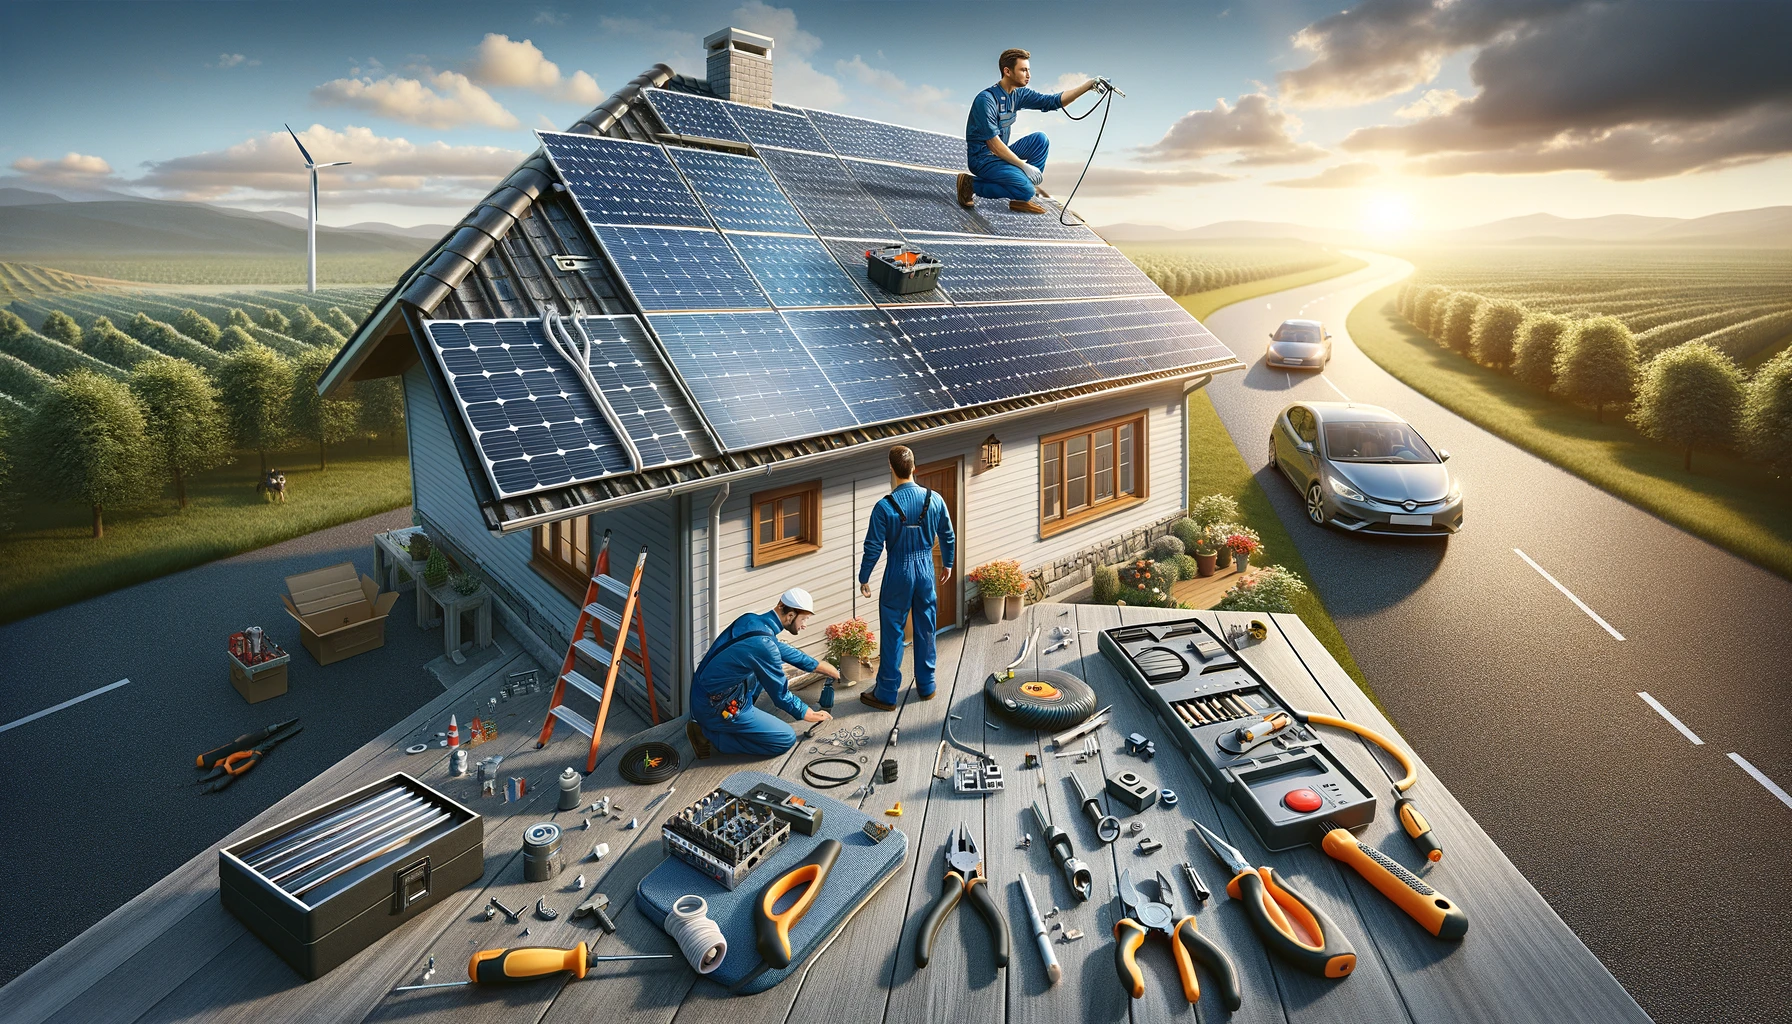 Preventive maintenance practices for solar panels.